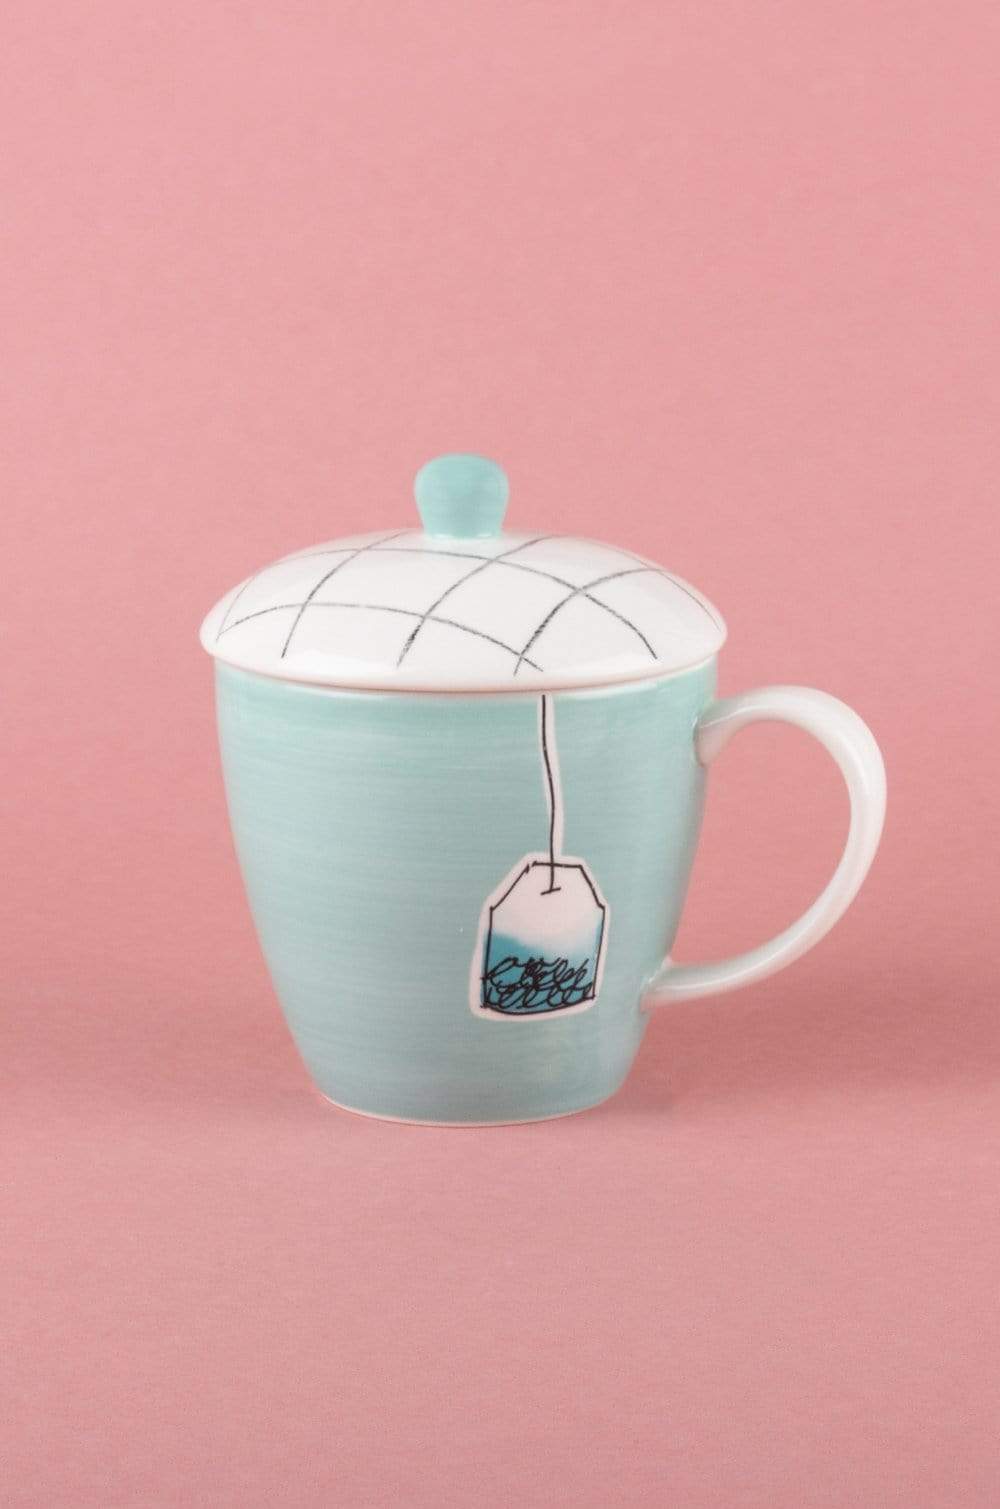 Teal Tea Time Handpainted Mug with Lid